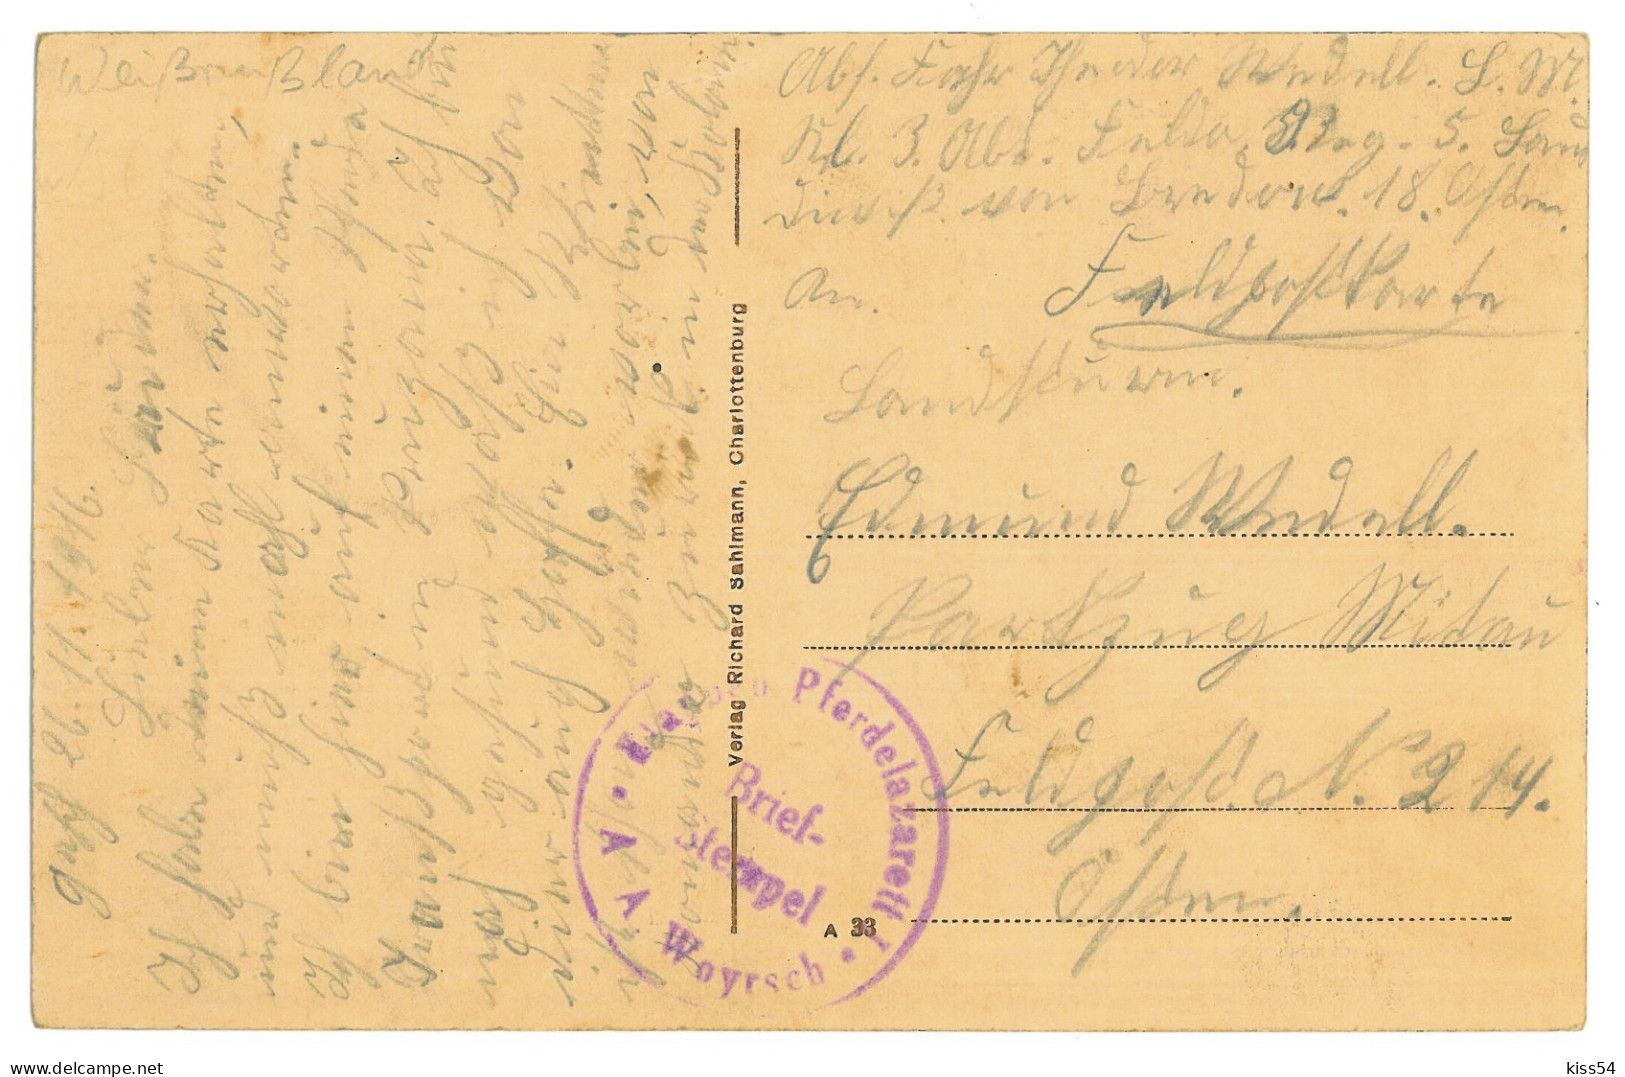 BL 31 - 24502 PRUZHANY, Brest Region, Street School, Belarus - Old Postcard, CENSOR - Used - 1916 - Bielorussia